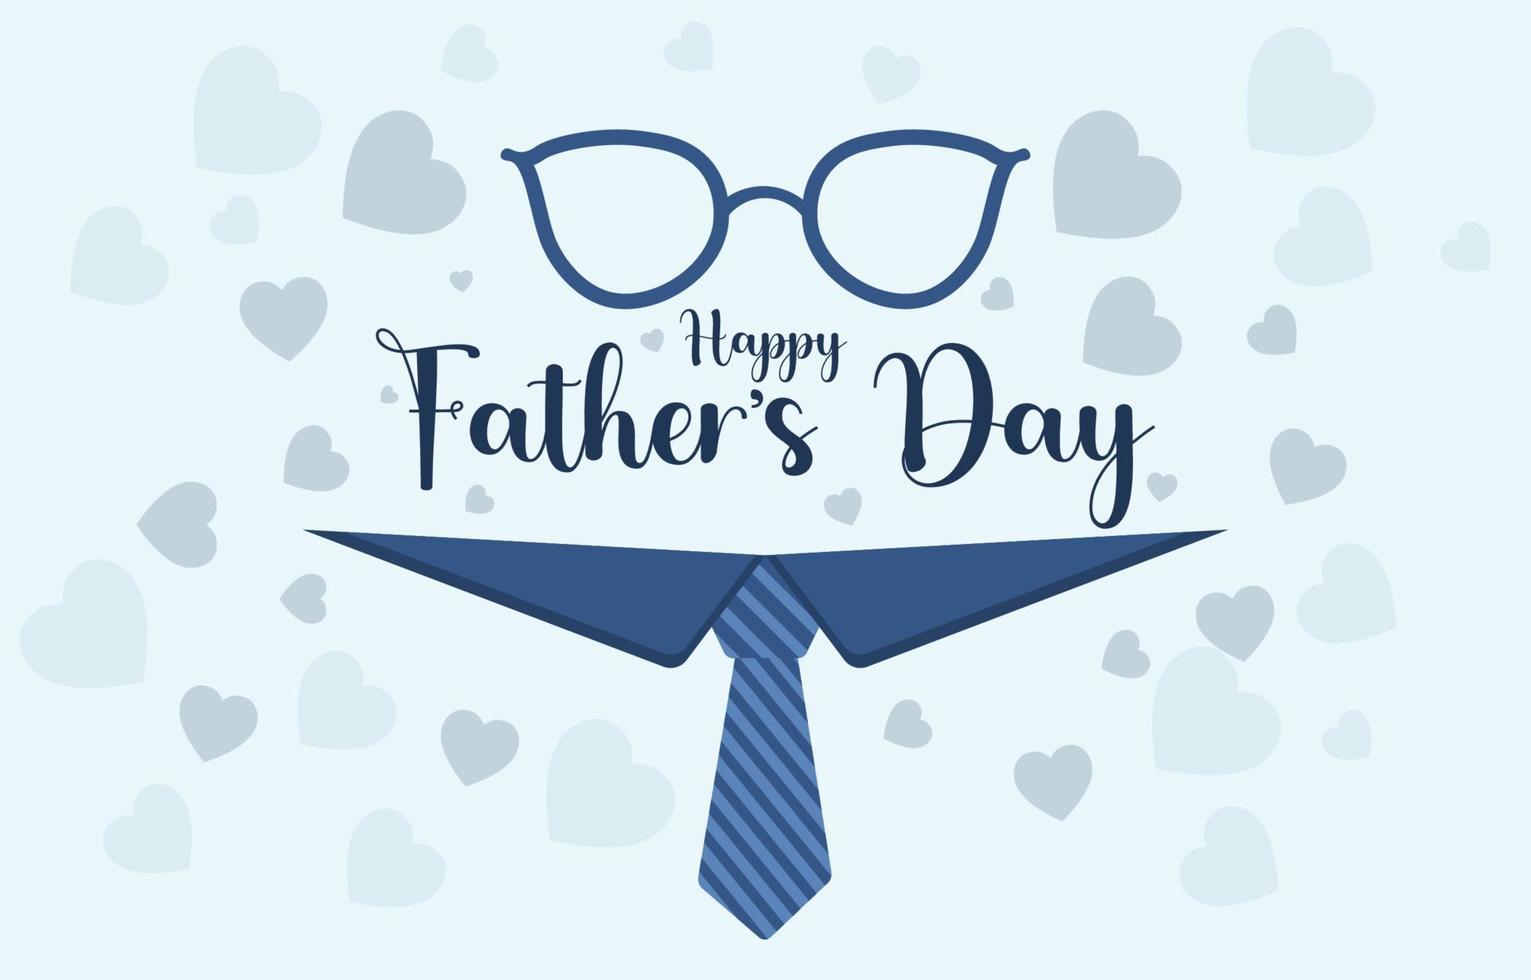 illustrazione vettoriale del biglietto di auguri per la festa del papà, con scritta felice per la festa del papà decorata con cuori e sfondo blu.